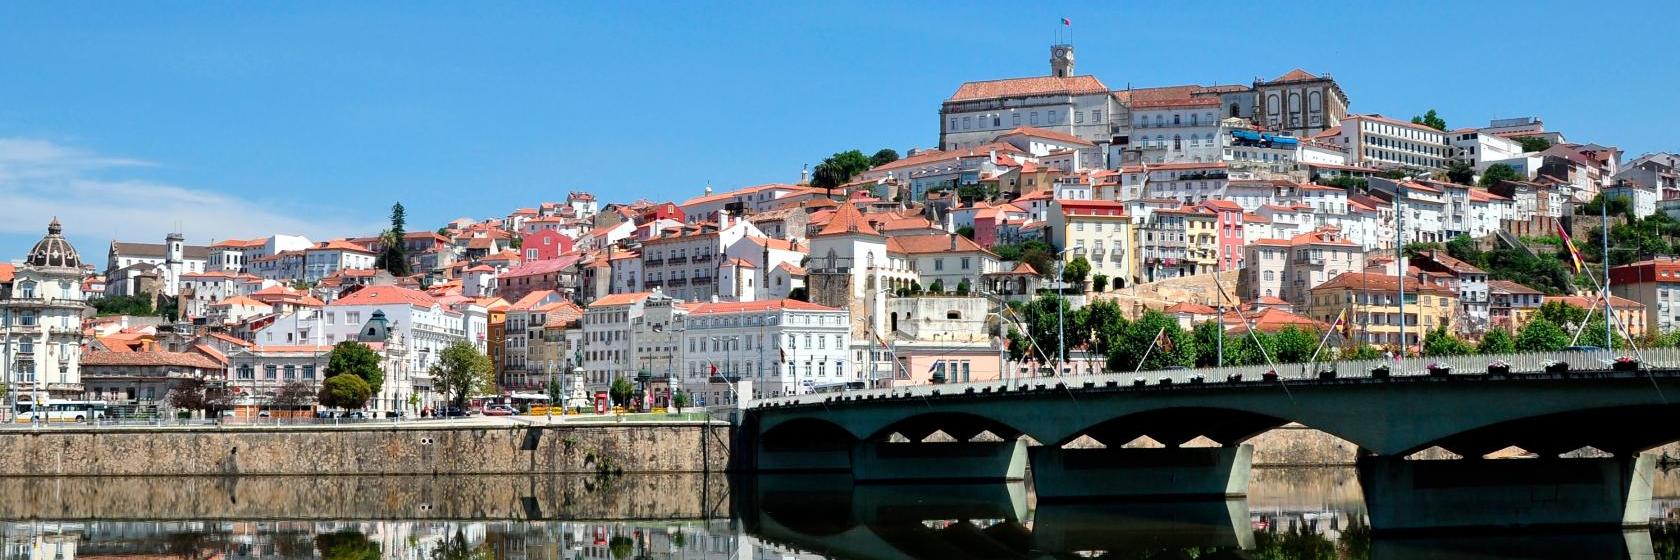 pt-central - ポルトからコインブラまでバス移動 - 旅ログポルトガル, ポルトガル宿